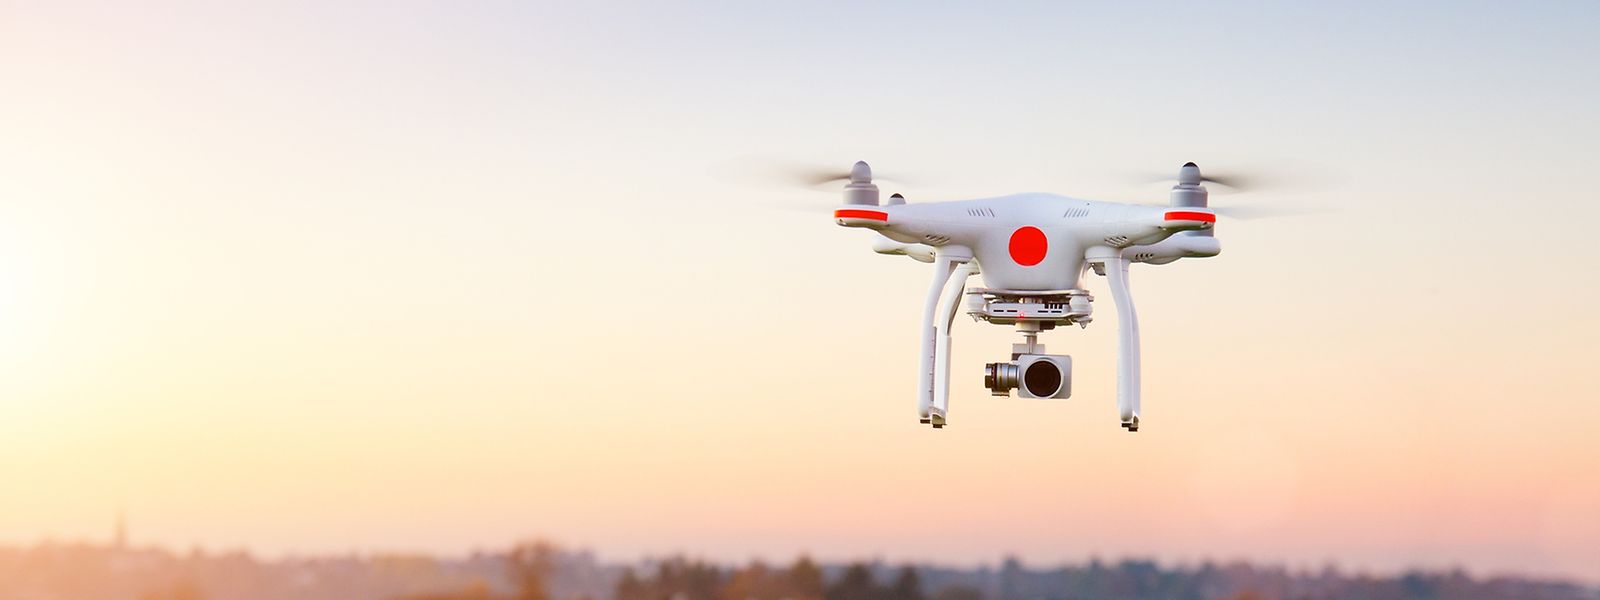 Zivile Drohnen mit einem Gewicht von unter zwei Kilo dürfen prinzipiell auf dem eigenen Grundstück bis zu einer Flughöhe von 50 Meter benutzt werden – solange man sich an allgemein geltendes Recht hält. 